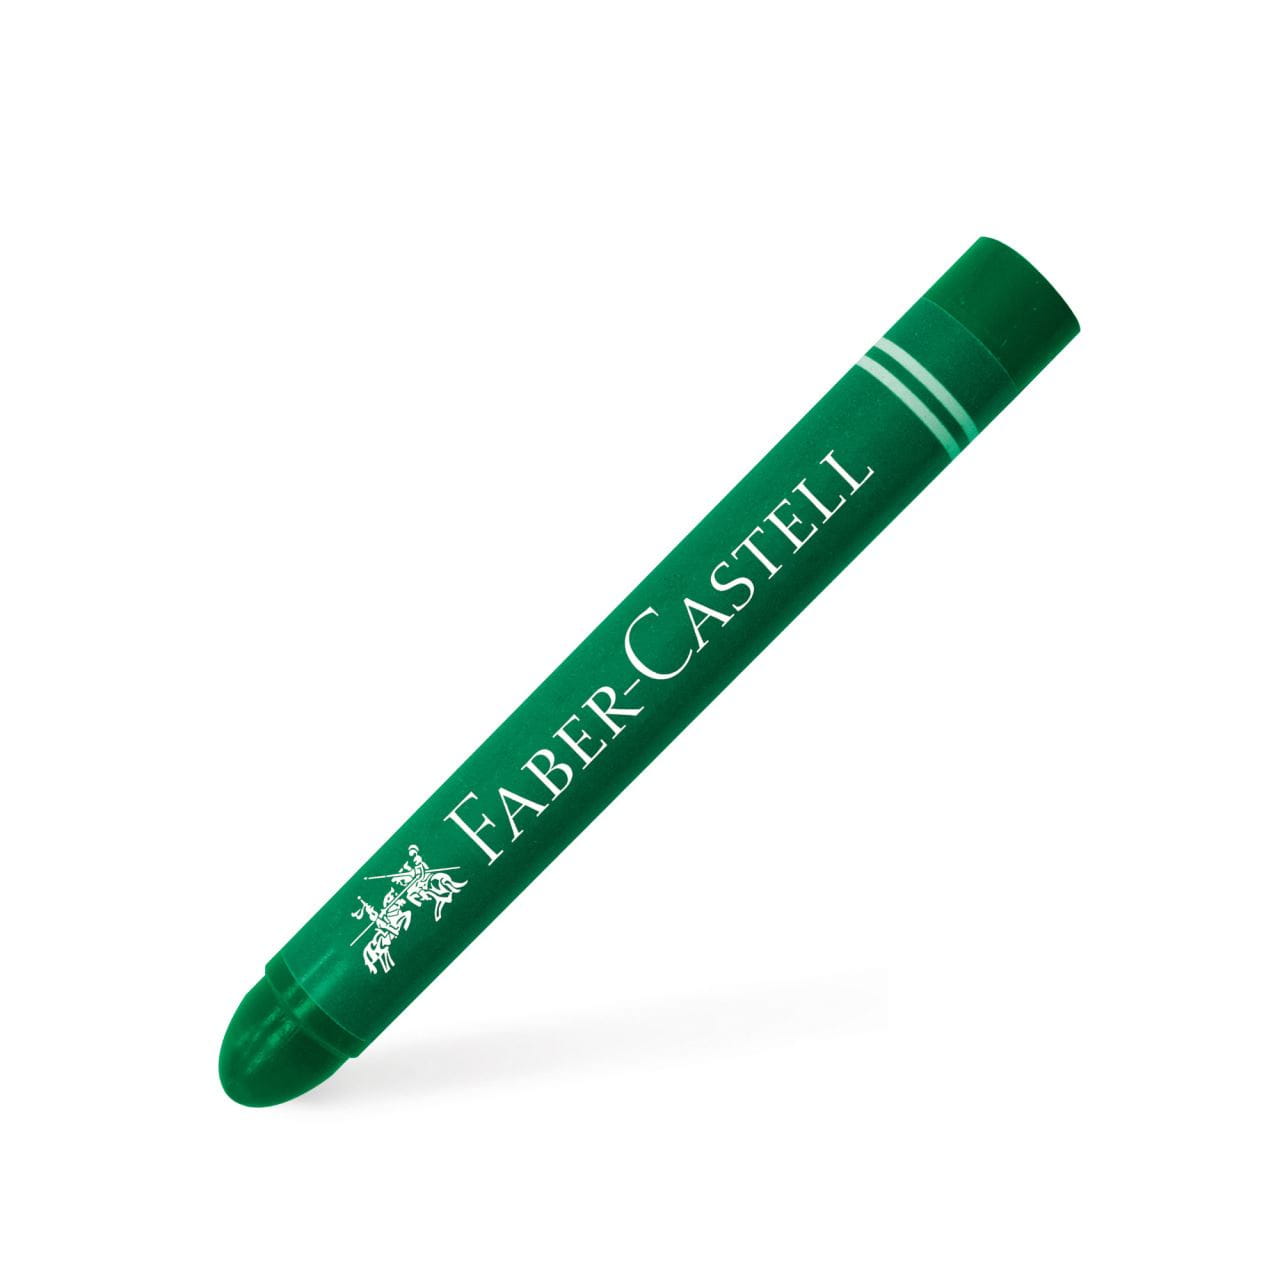 Faber-Castell - Crayones de cera Jumbo estuche x12